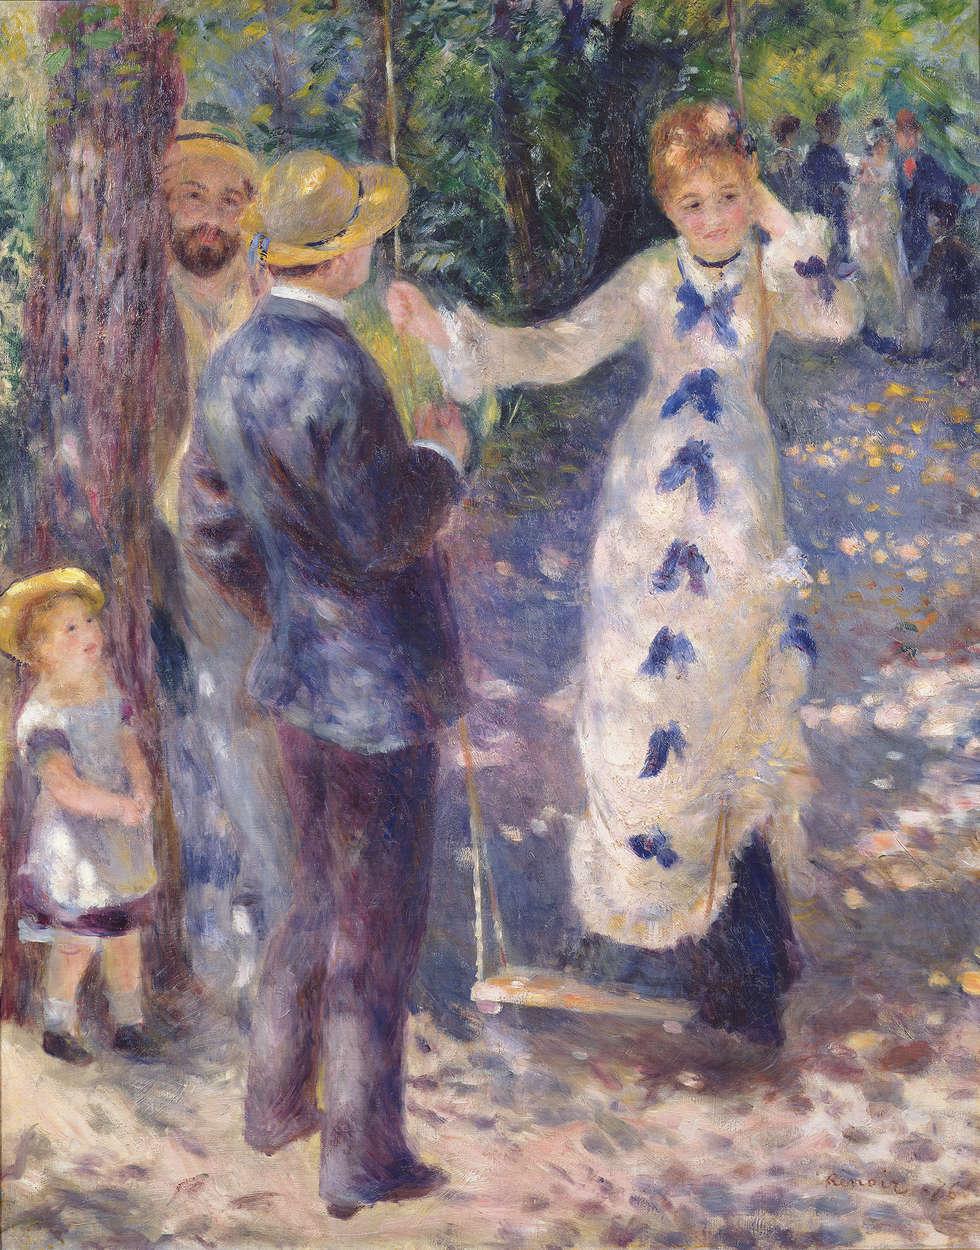             Fototapete "Auf der Schaukel" von Pierre Auguste Renoir
        